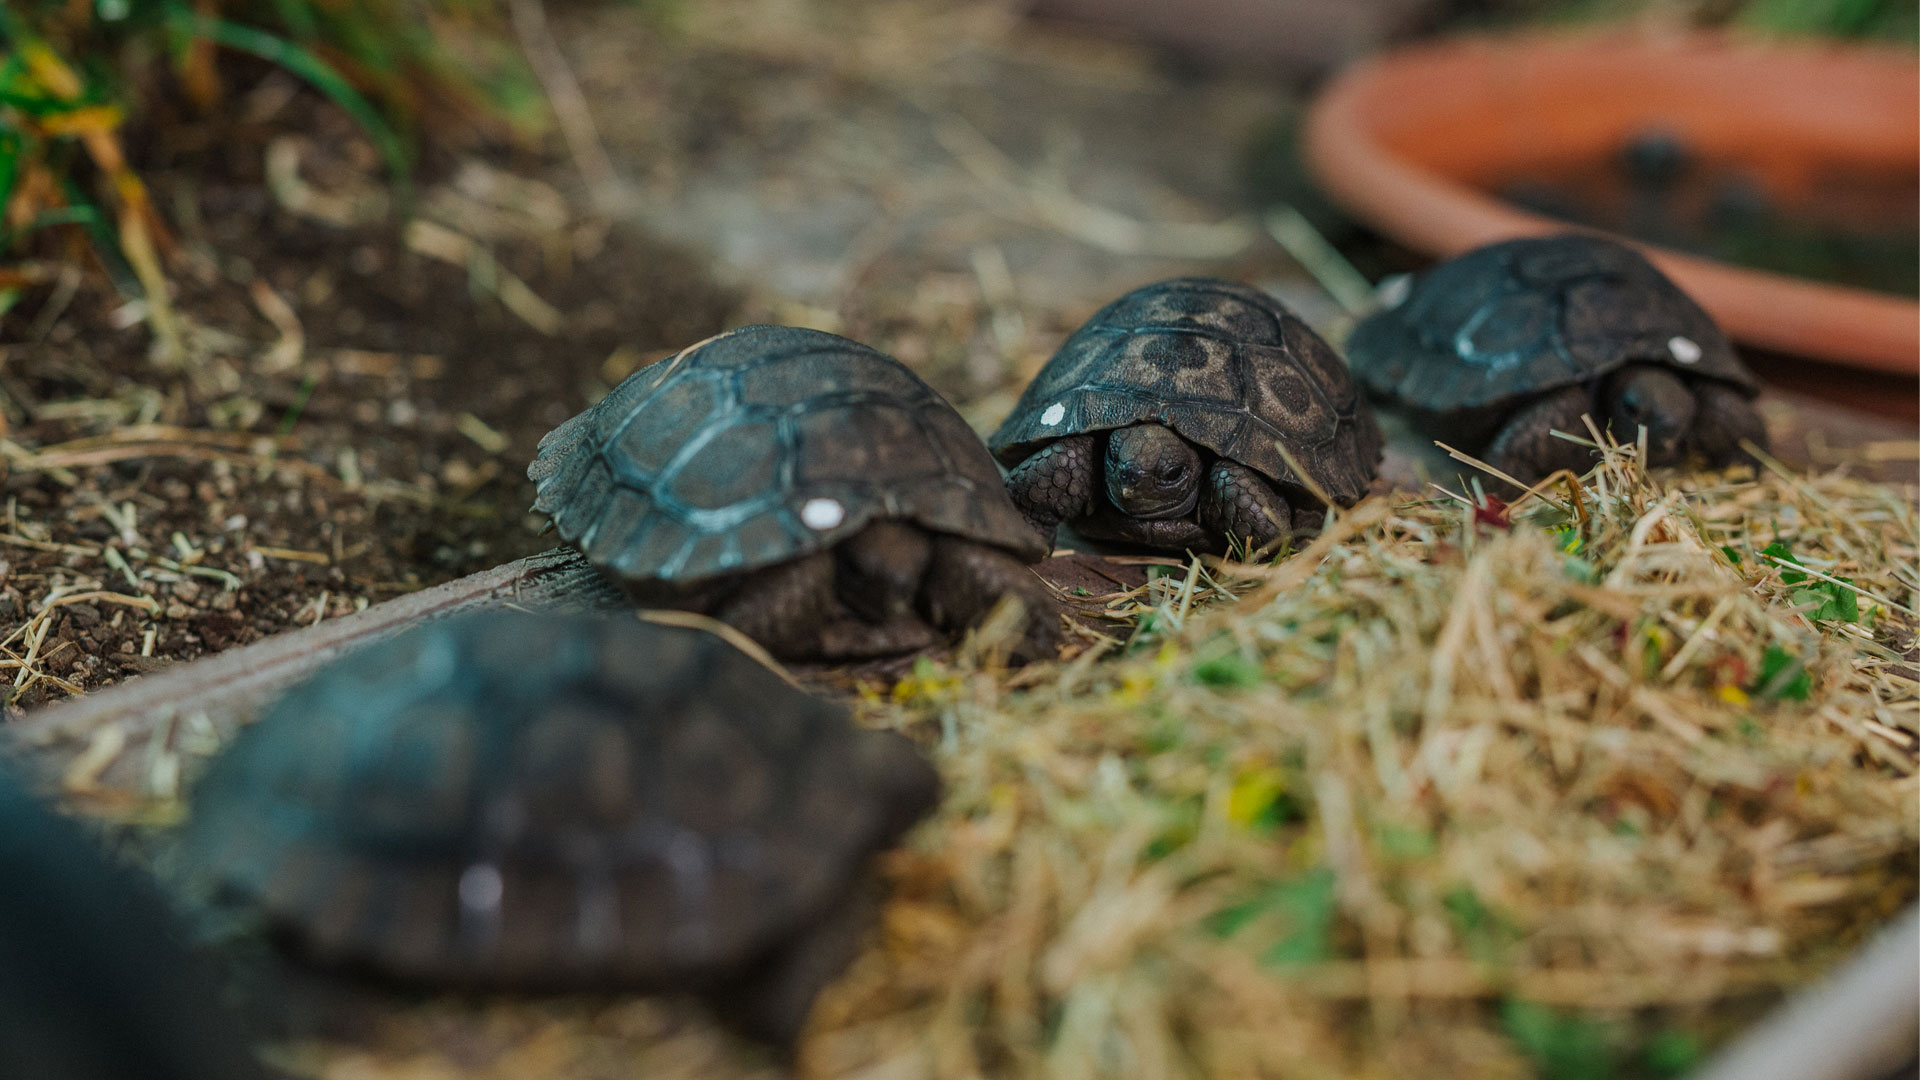 https://rfacdn.nz/zoo/assets/media/galapagos-tortoise-hatchlings-gallery-15.jpg